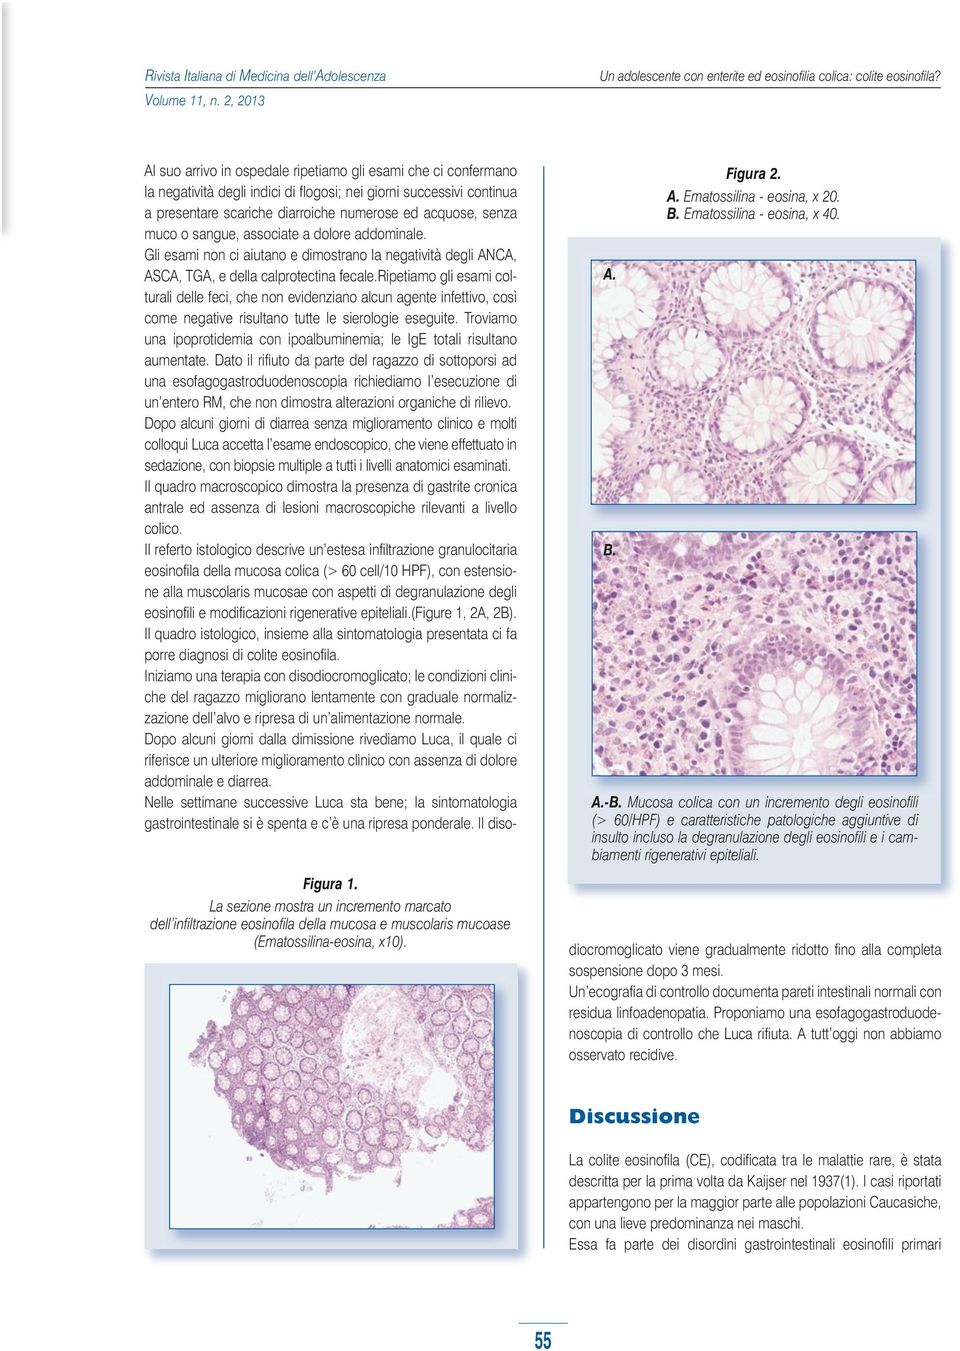 A.-B. Mucosa colica con un incremento degli eosinofili (> 60/HPF) e caratteristiche patologiche aggiuntive di insulto incluso la degranulazione degli eosinofili e i cambiamenti rigenerativi